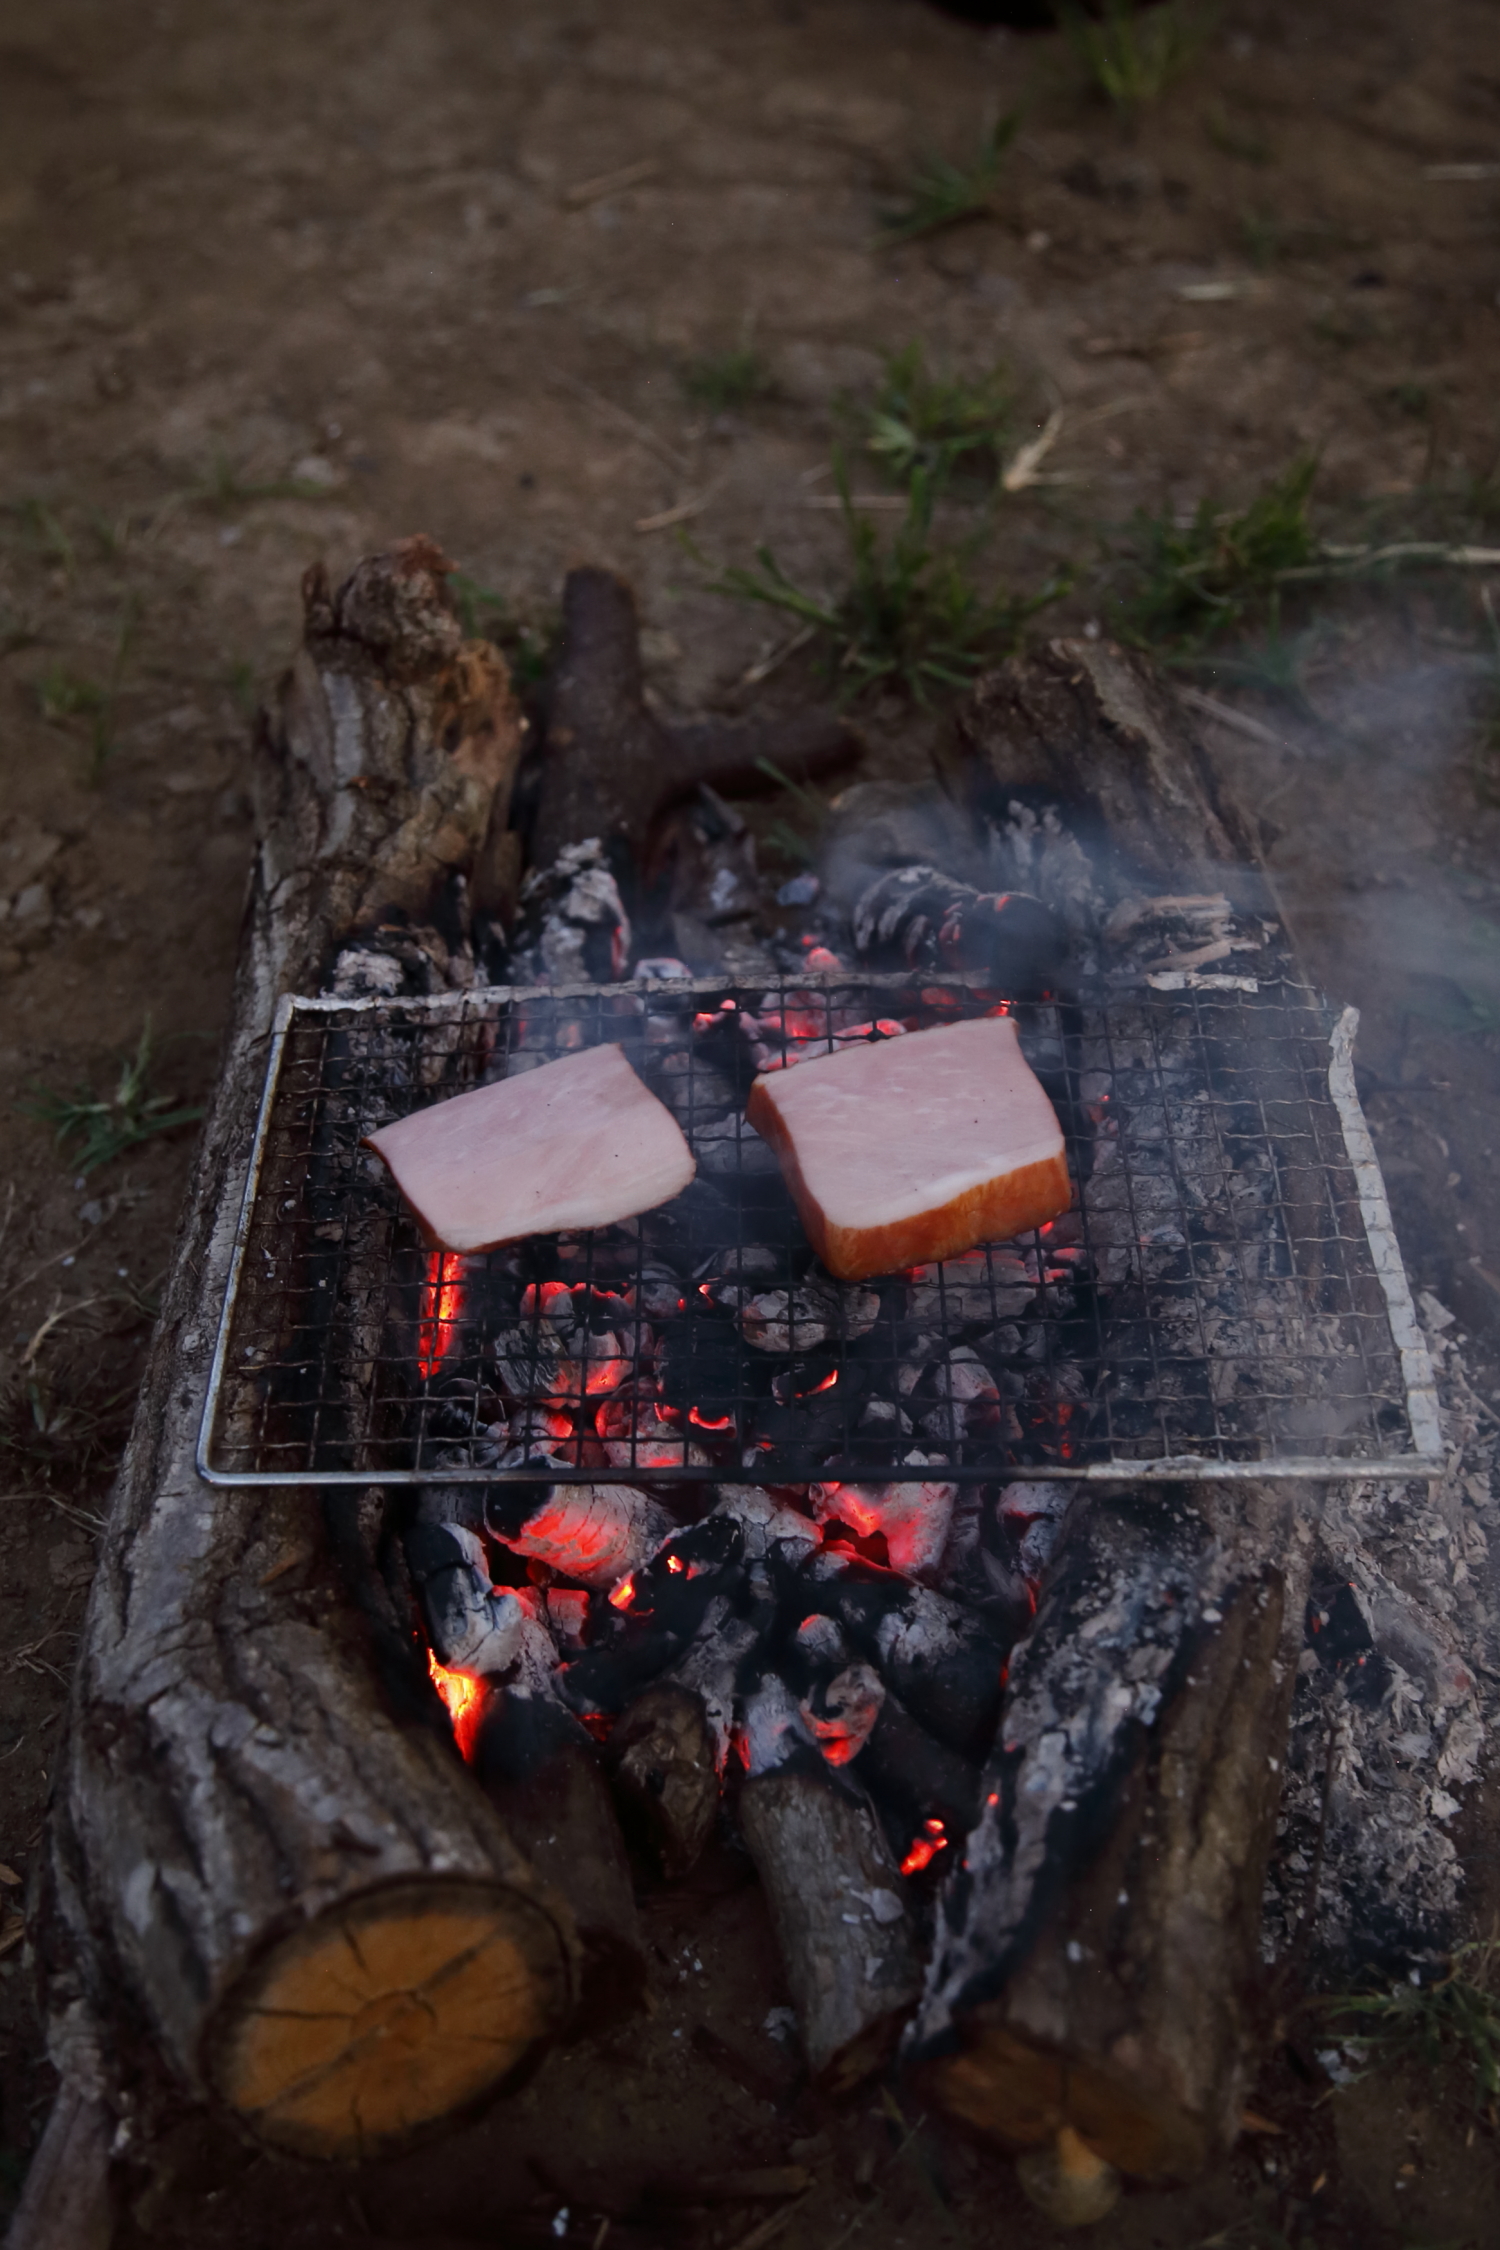 薪の組み方から火起こし 料理まで 簡単な焚き火のやり方とは Be Pal